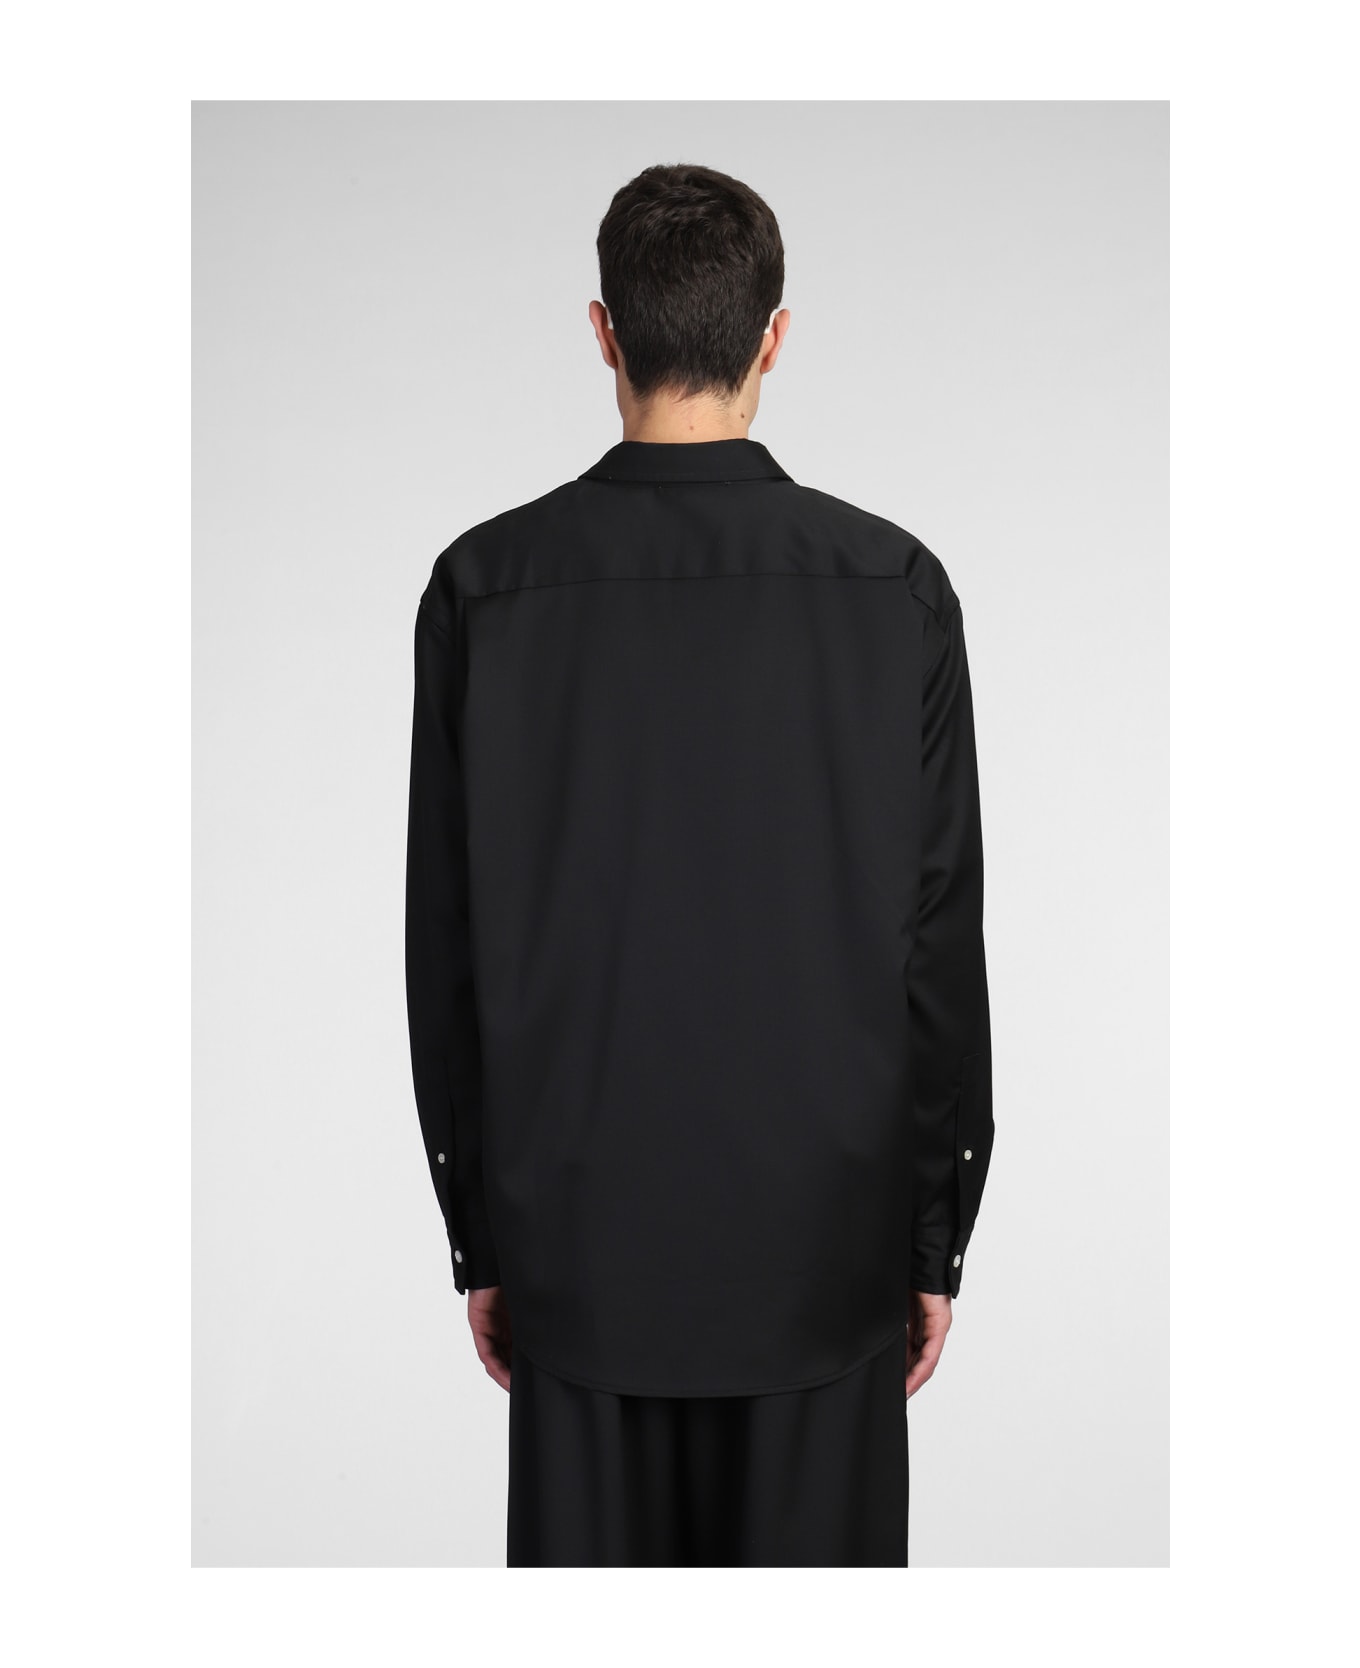 Acne Studios Casual Jacket In Black Wool - Black